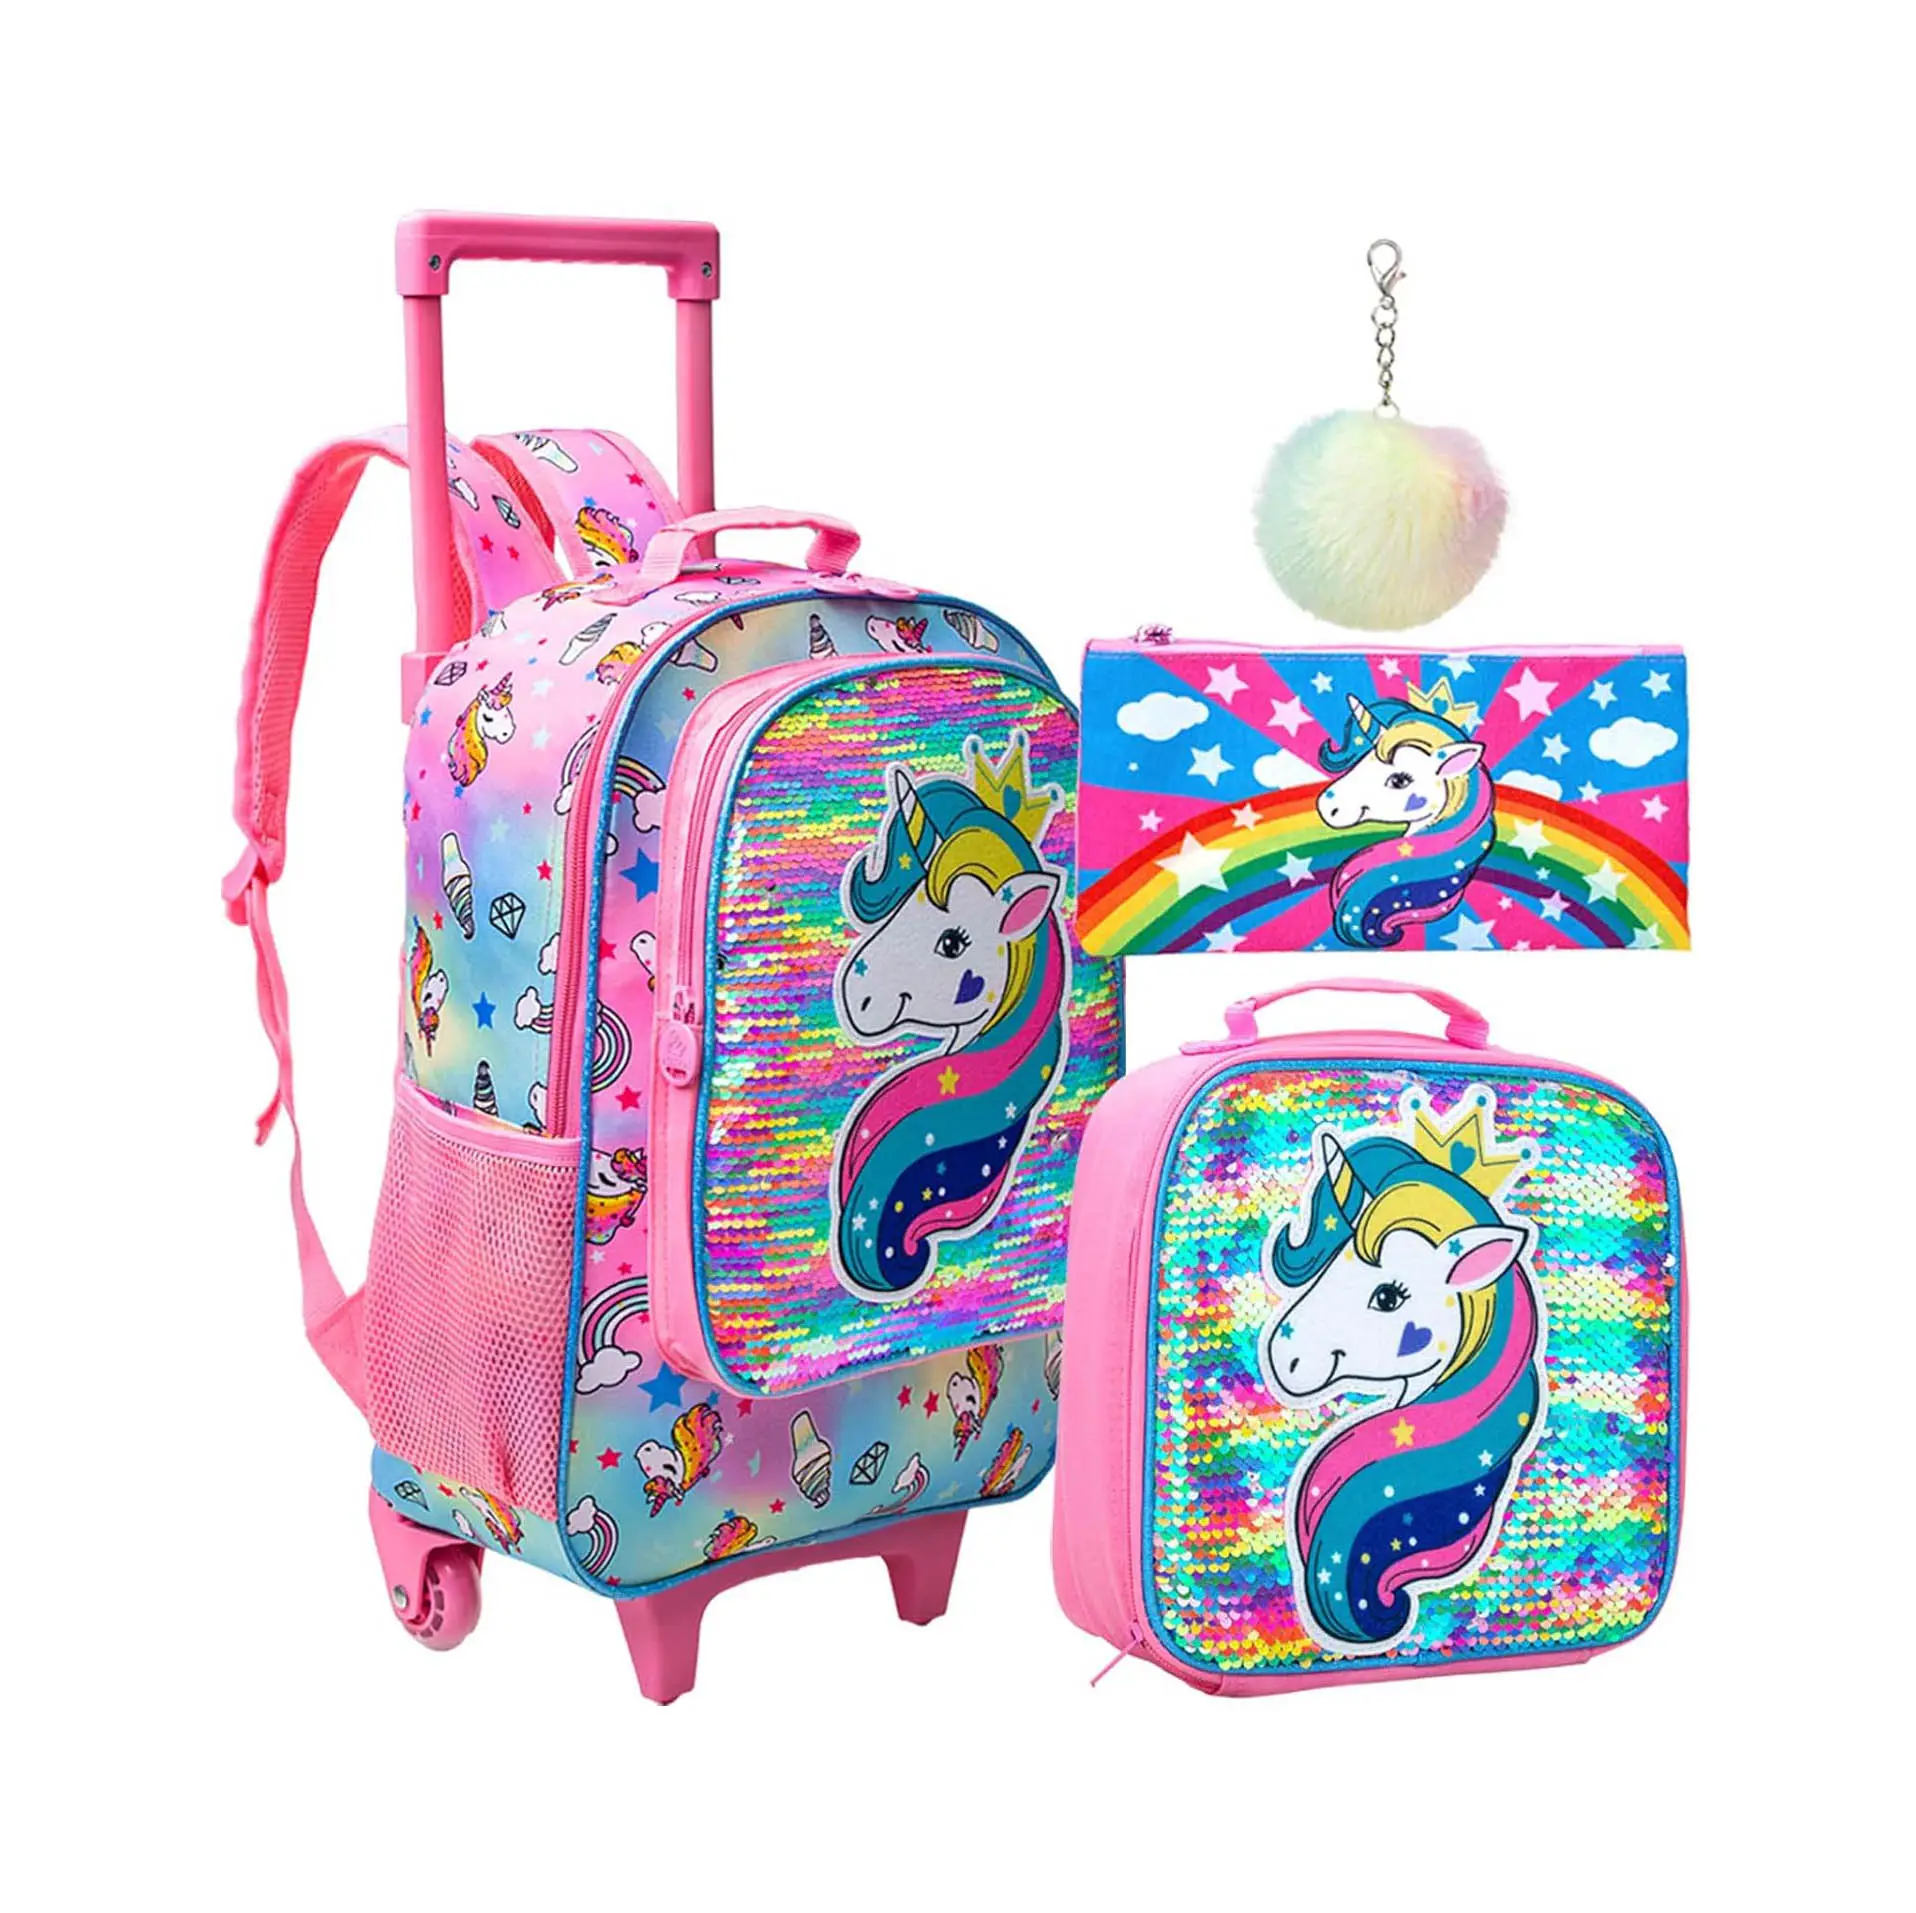 Mochila rodante de dibujos animados de último diseño, bolsa de carrito de unicornio de gran capacidad, bolsa de almuerzo, juegos de mochilas escolares 3 en 1 para niñas